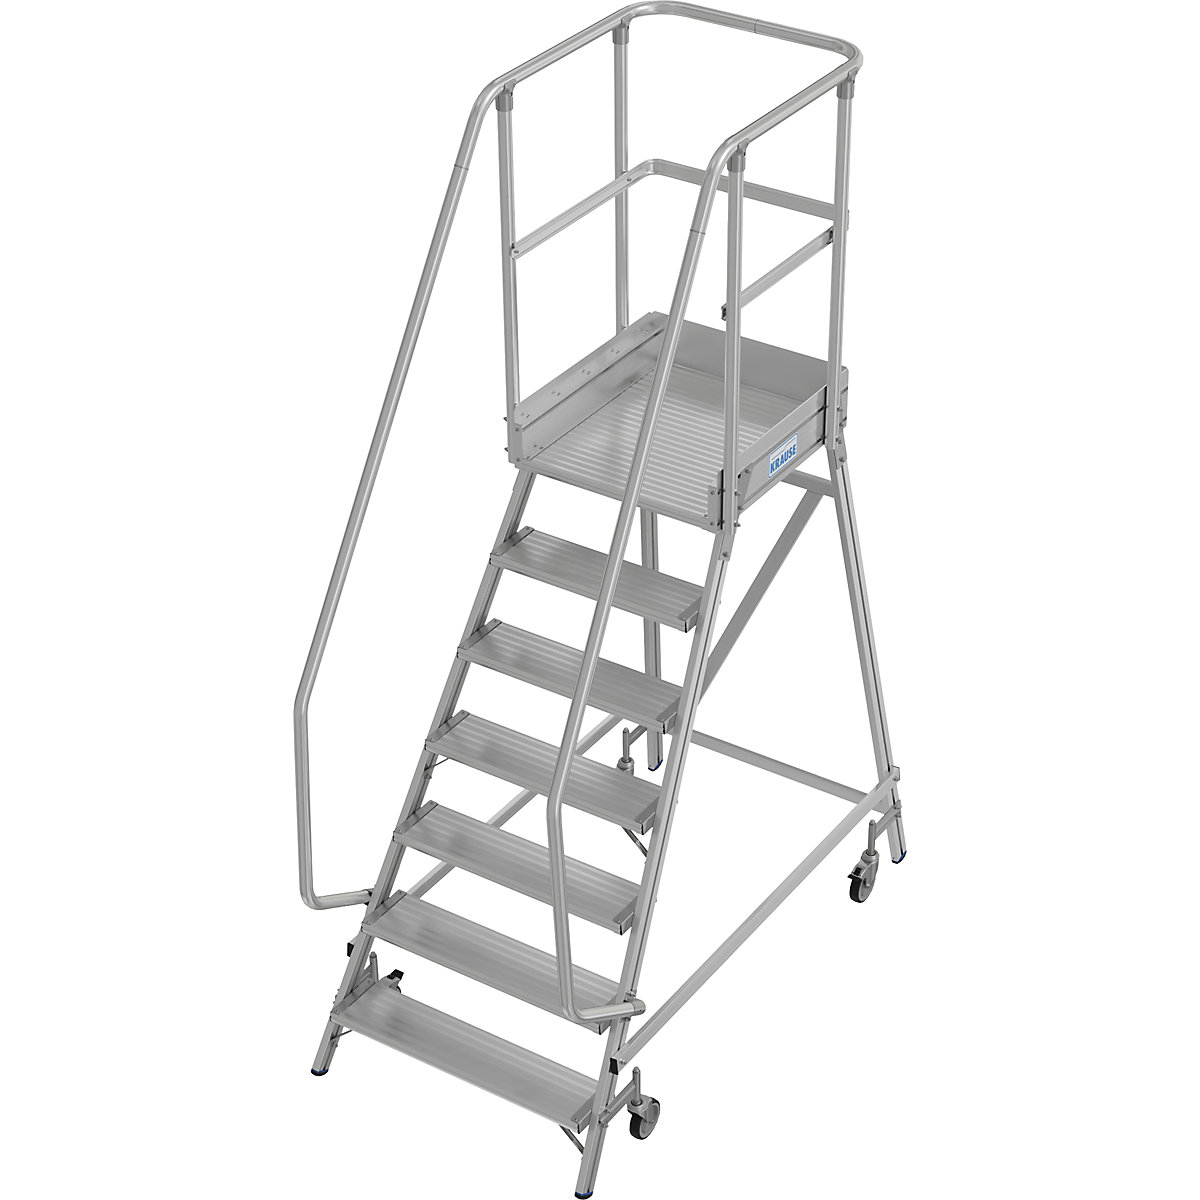 Escada de plataforma – KRAUSE, subida de um lado, proteção para os pés, 7 degraus-9